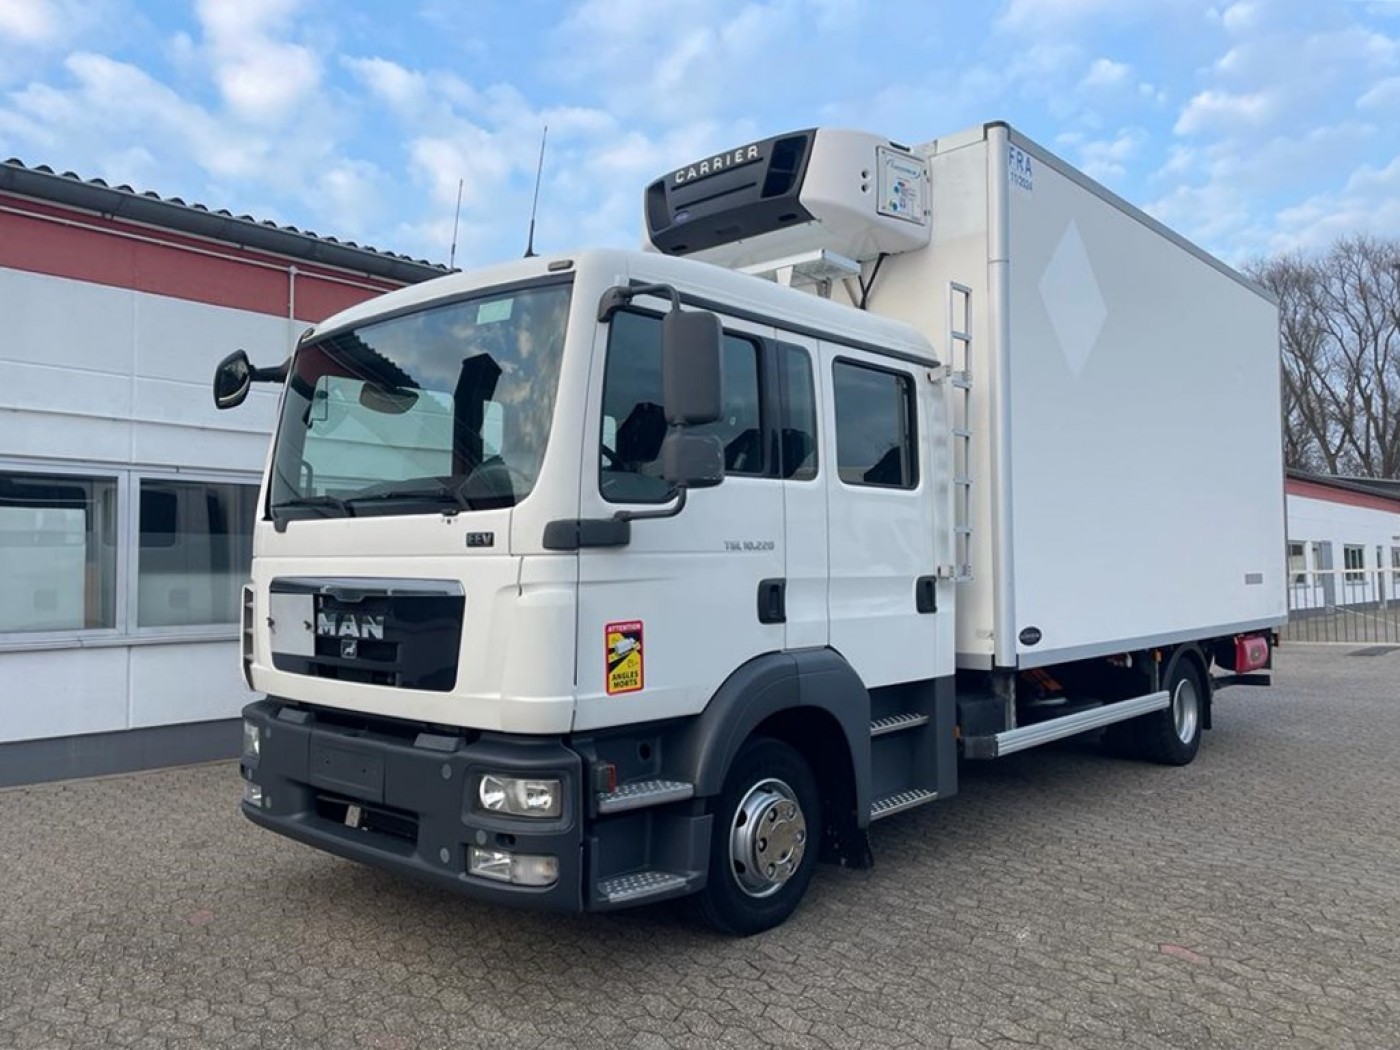  - TGL 10.220 Cabina doppia Camion frigo box mobili veicolo per traslochi veicolo per il trasporto darte